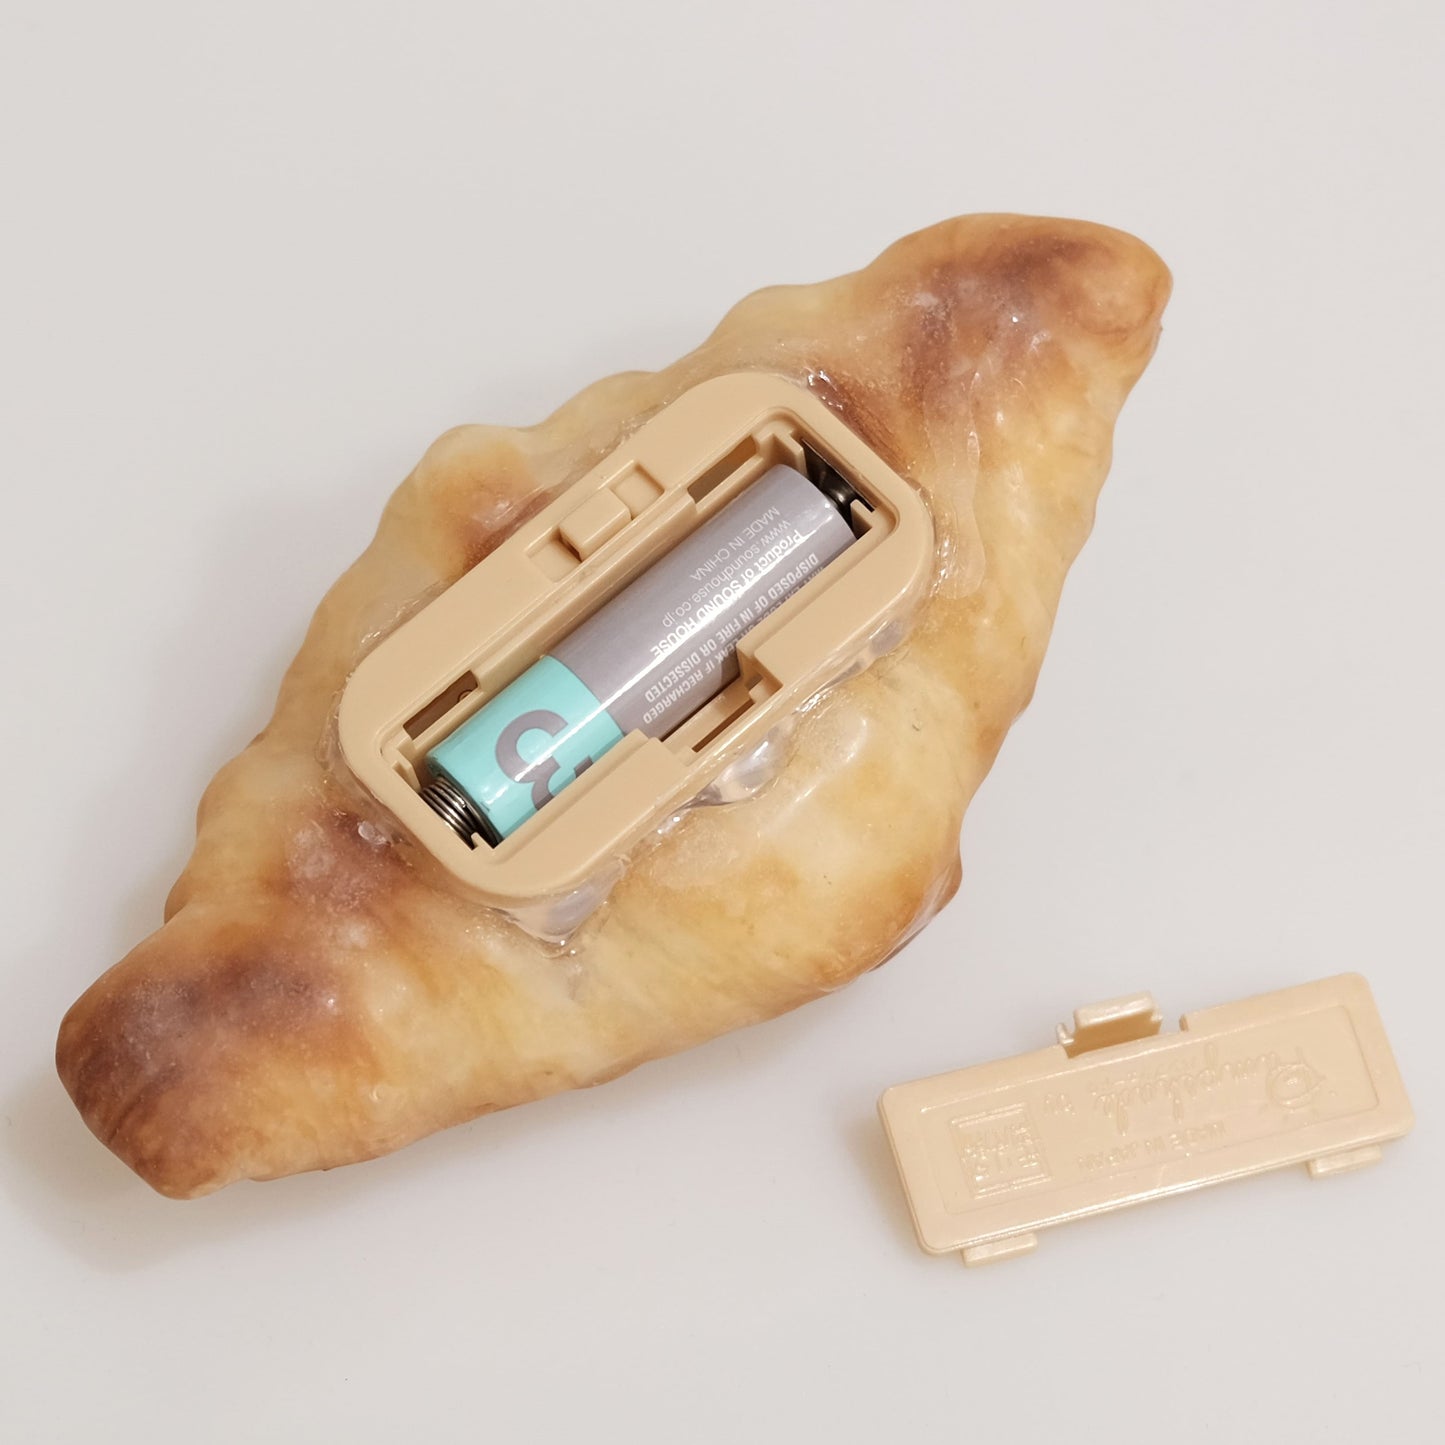 Croissant Bread Lamp (Battery Powered LED Light)